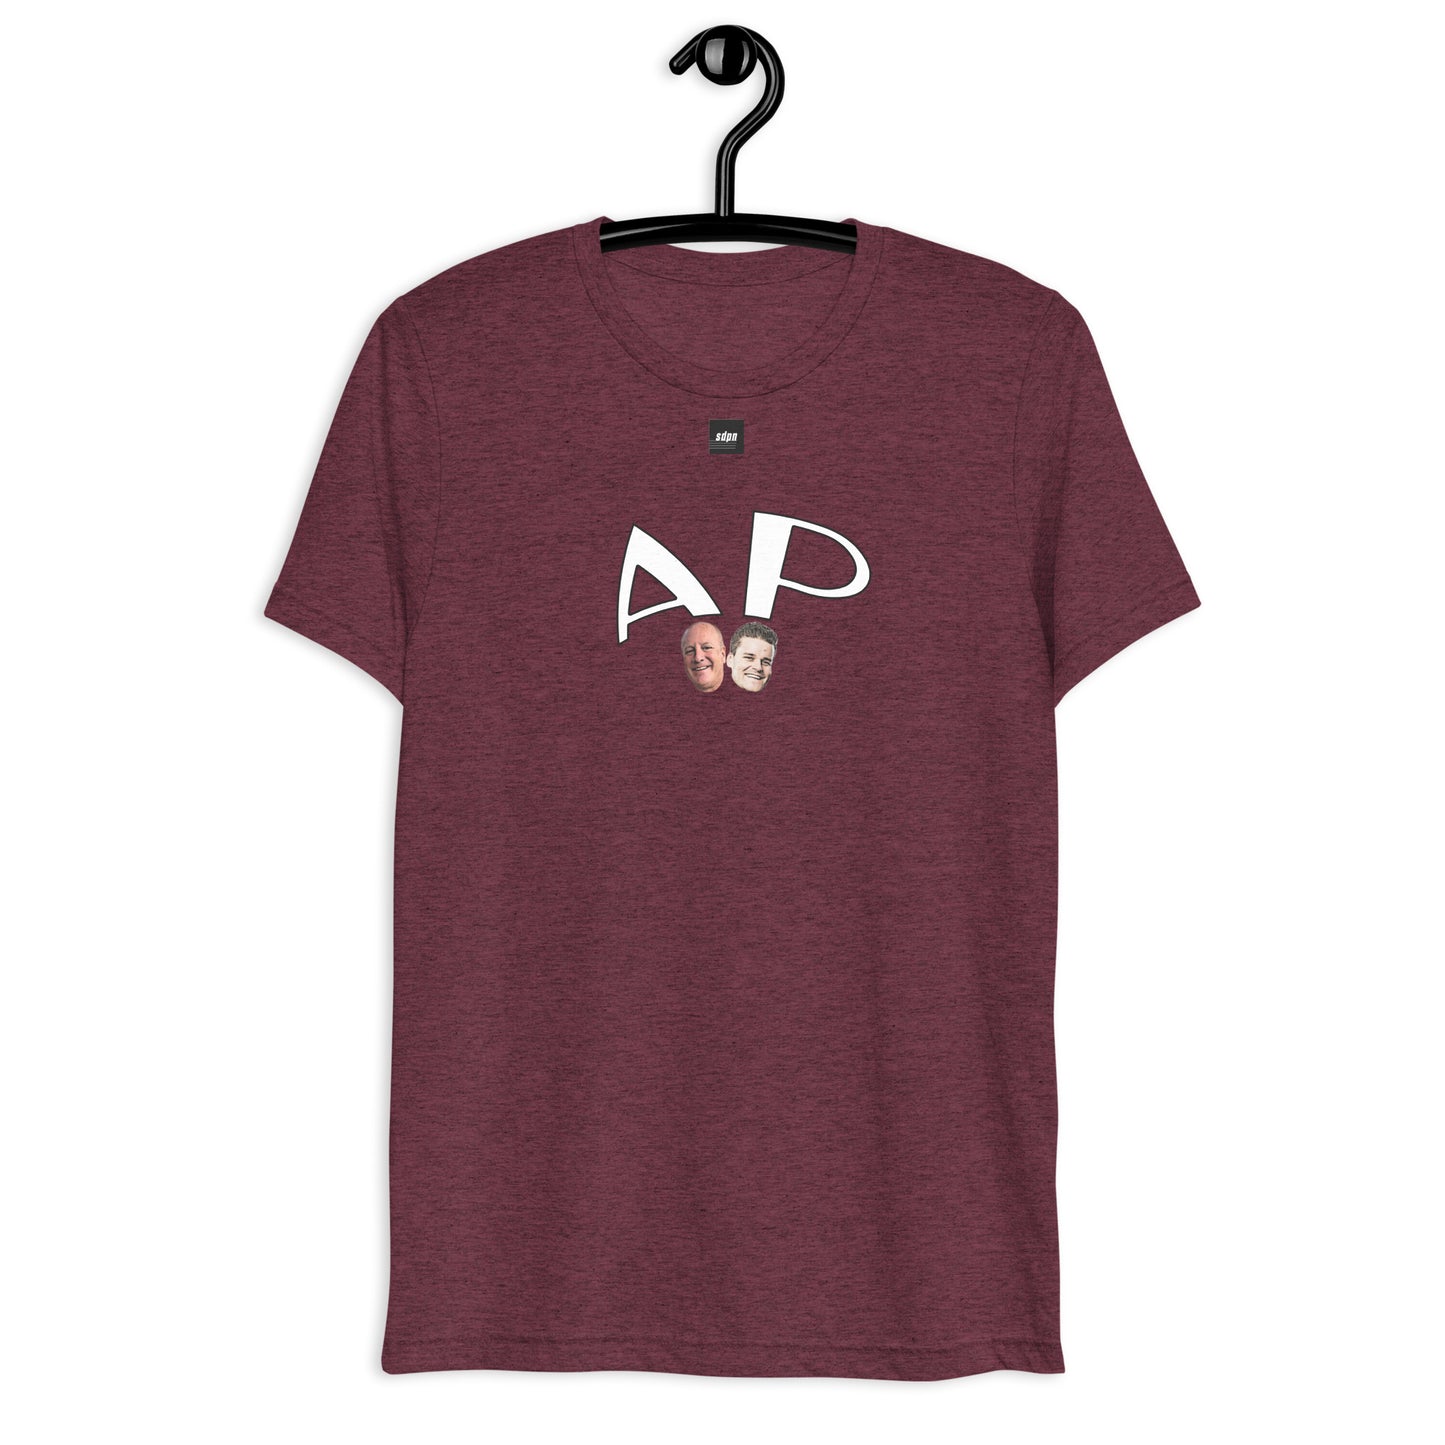 Agent Provocateur "AP" T-Shirt